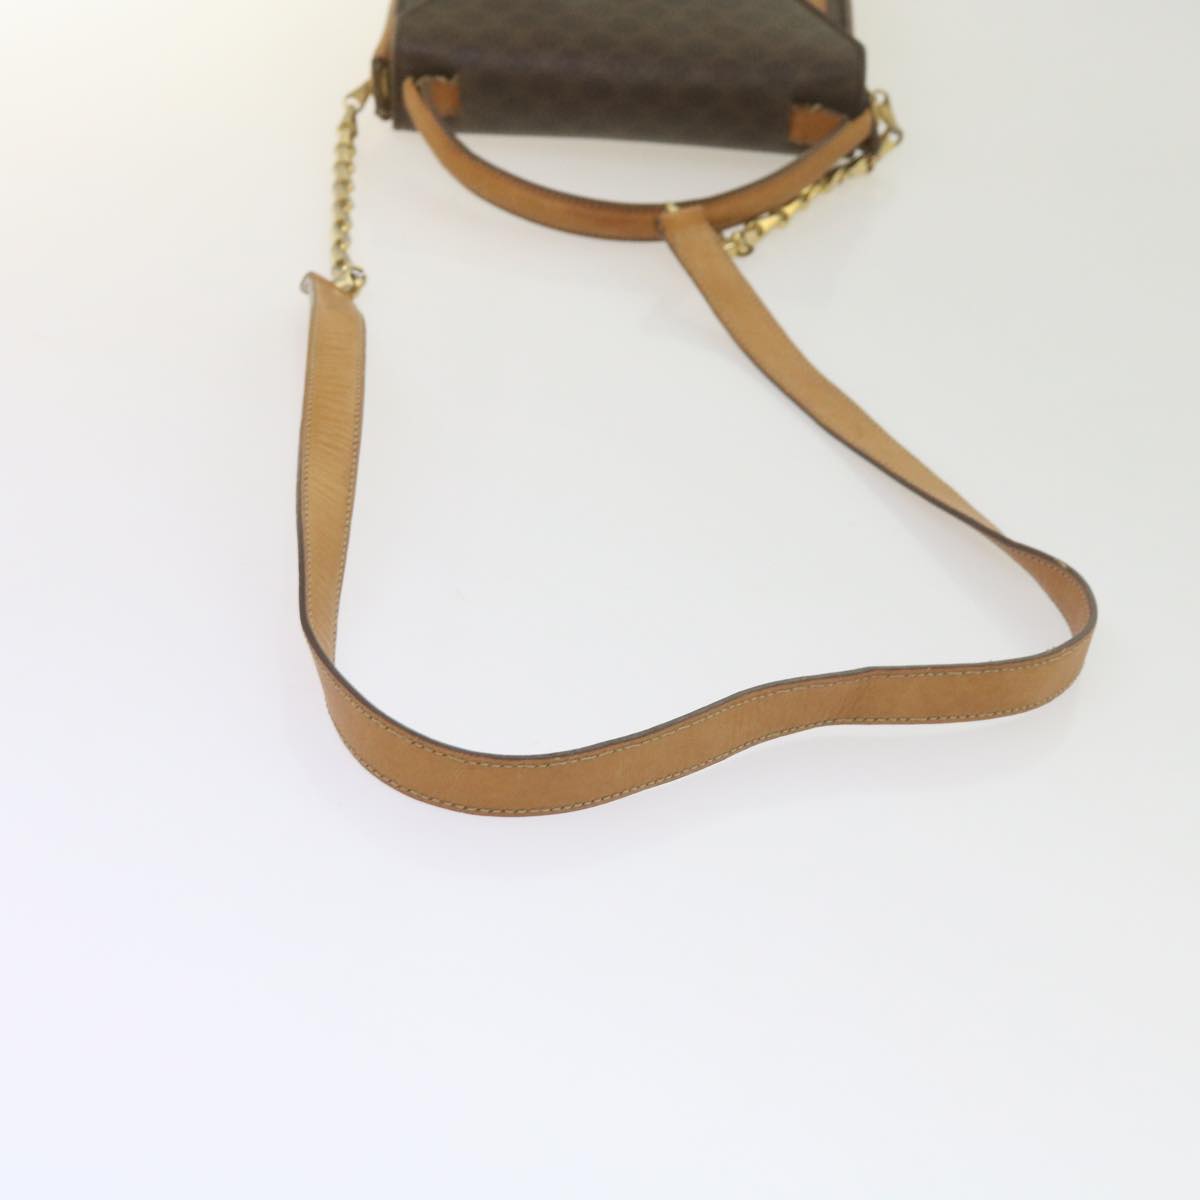 CELINE Macadam Canvas Shoulder Bag PVC Leather Brown Auth 61554